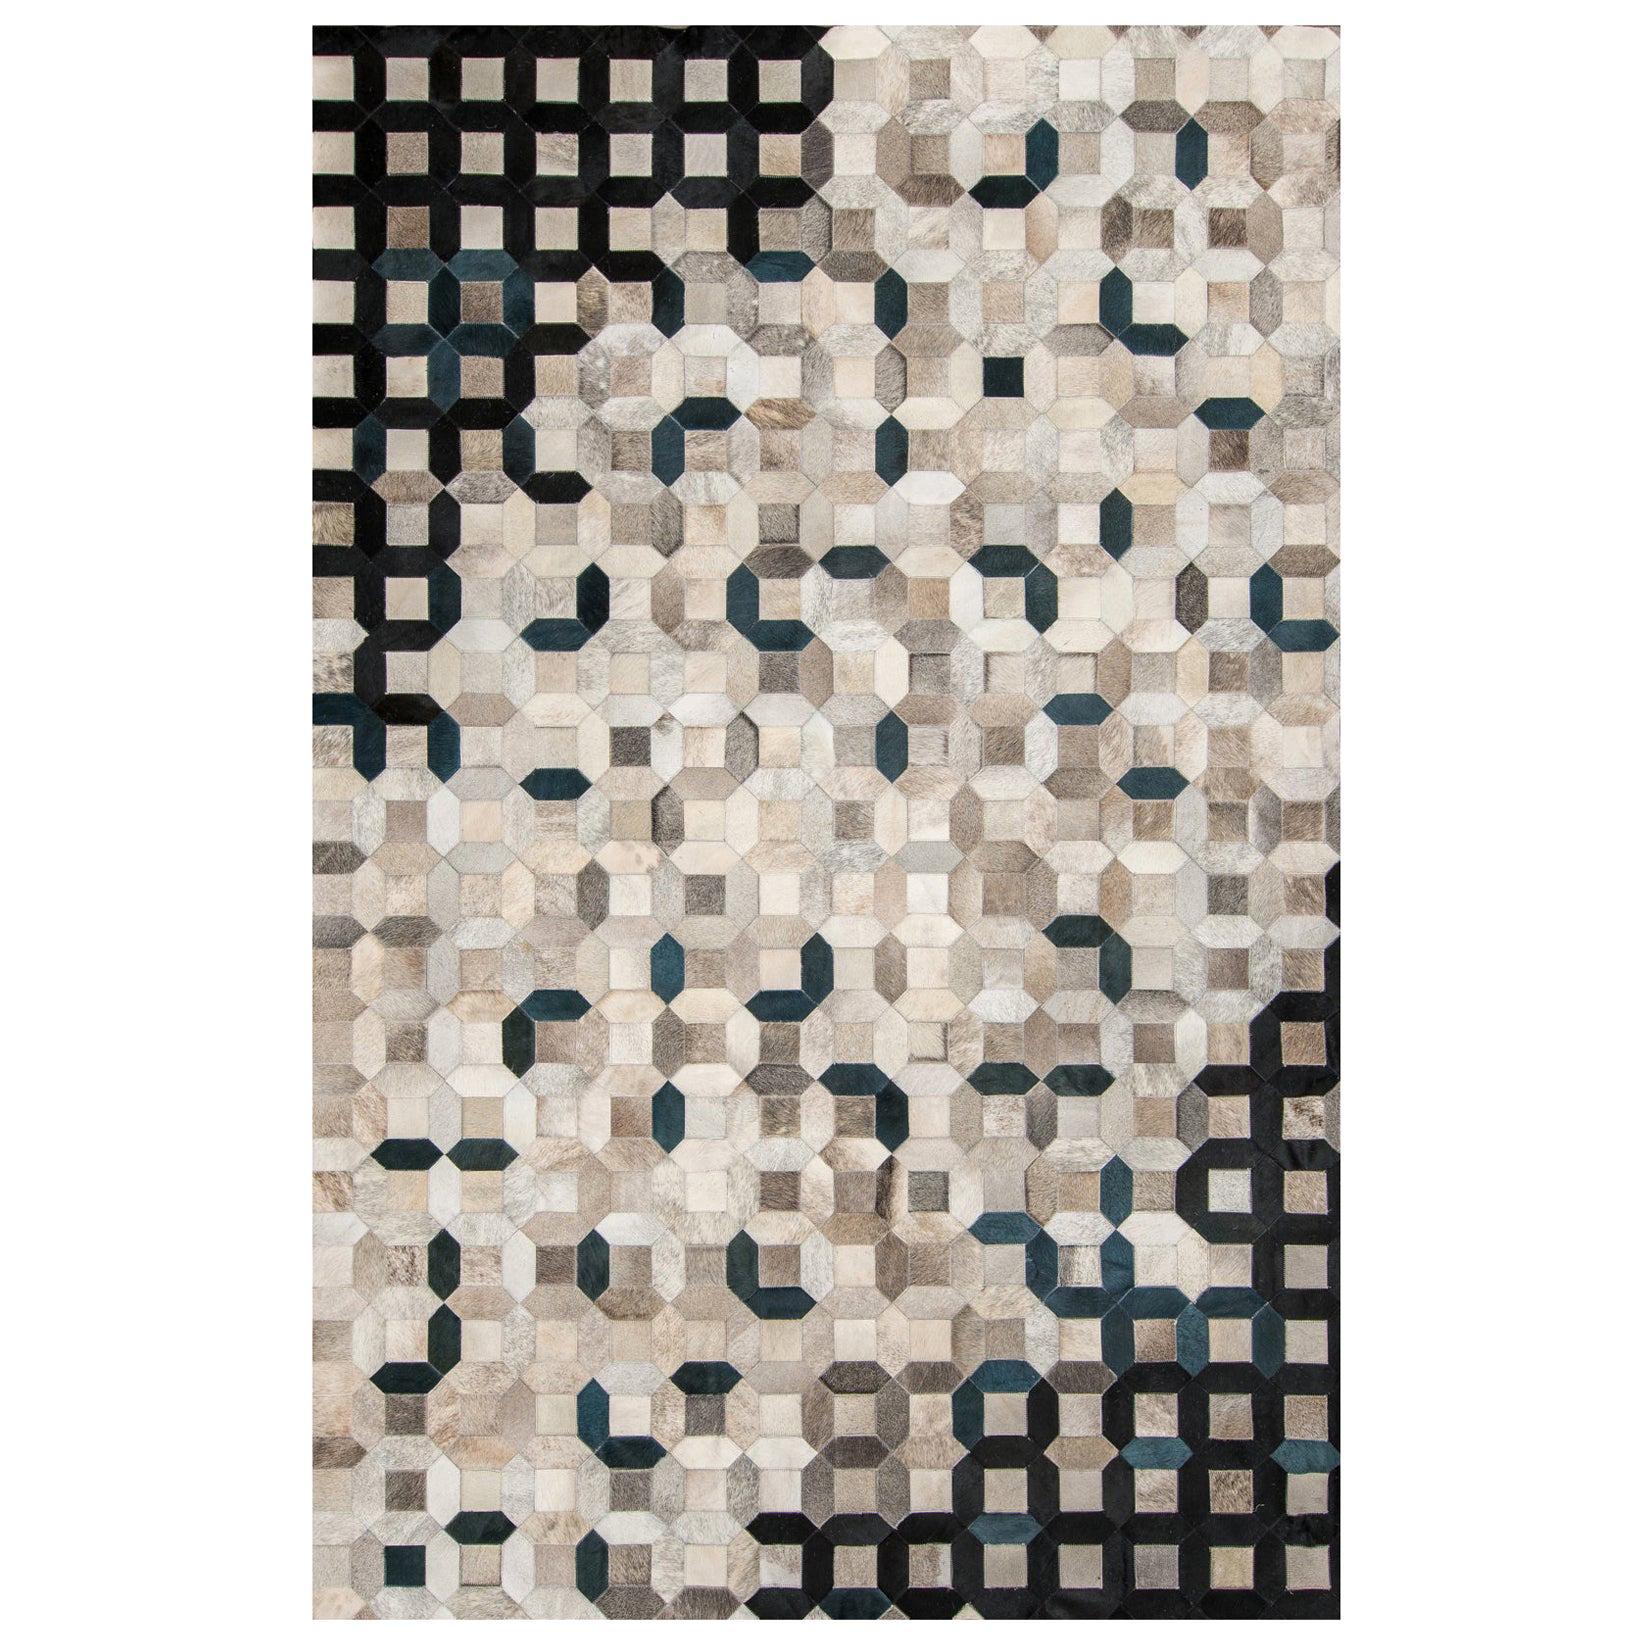 Black, gray tessellation Trellis Cowhide Area Floor Rug Large  For Sale